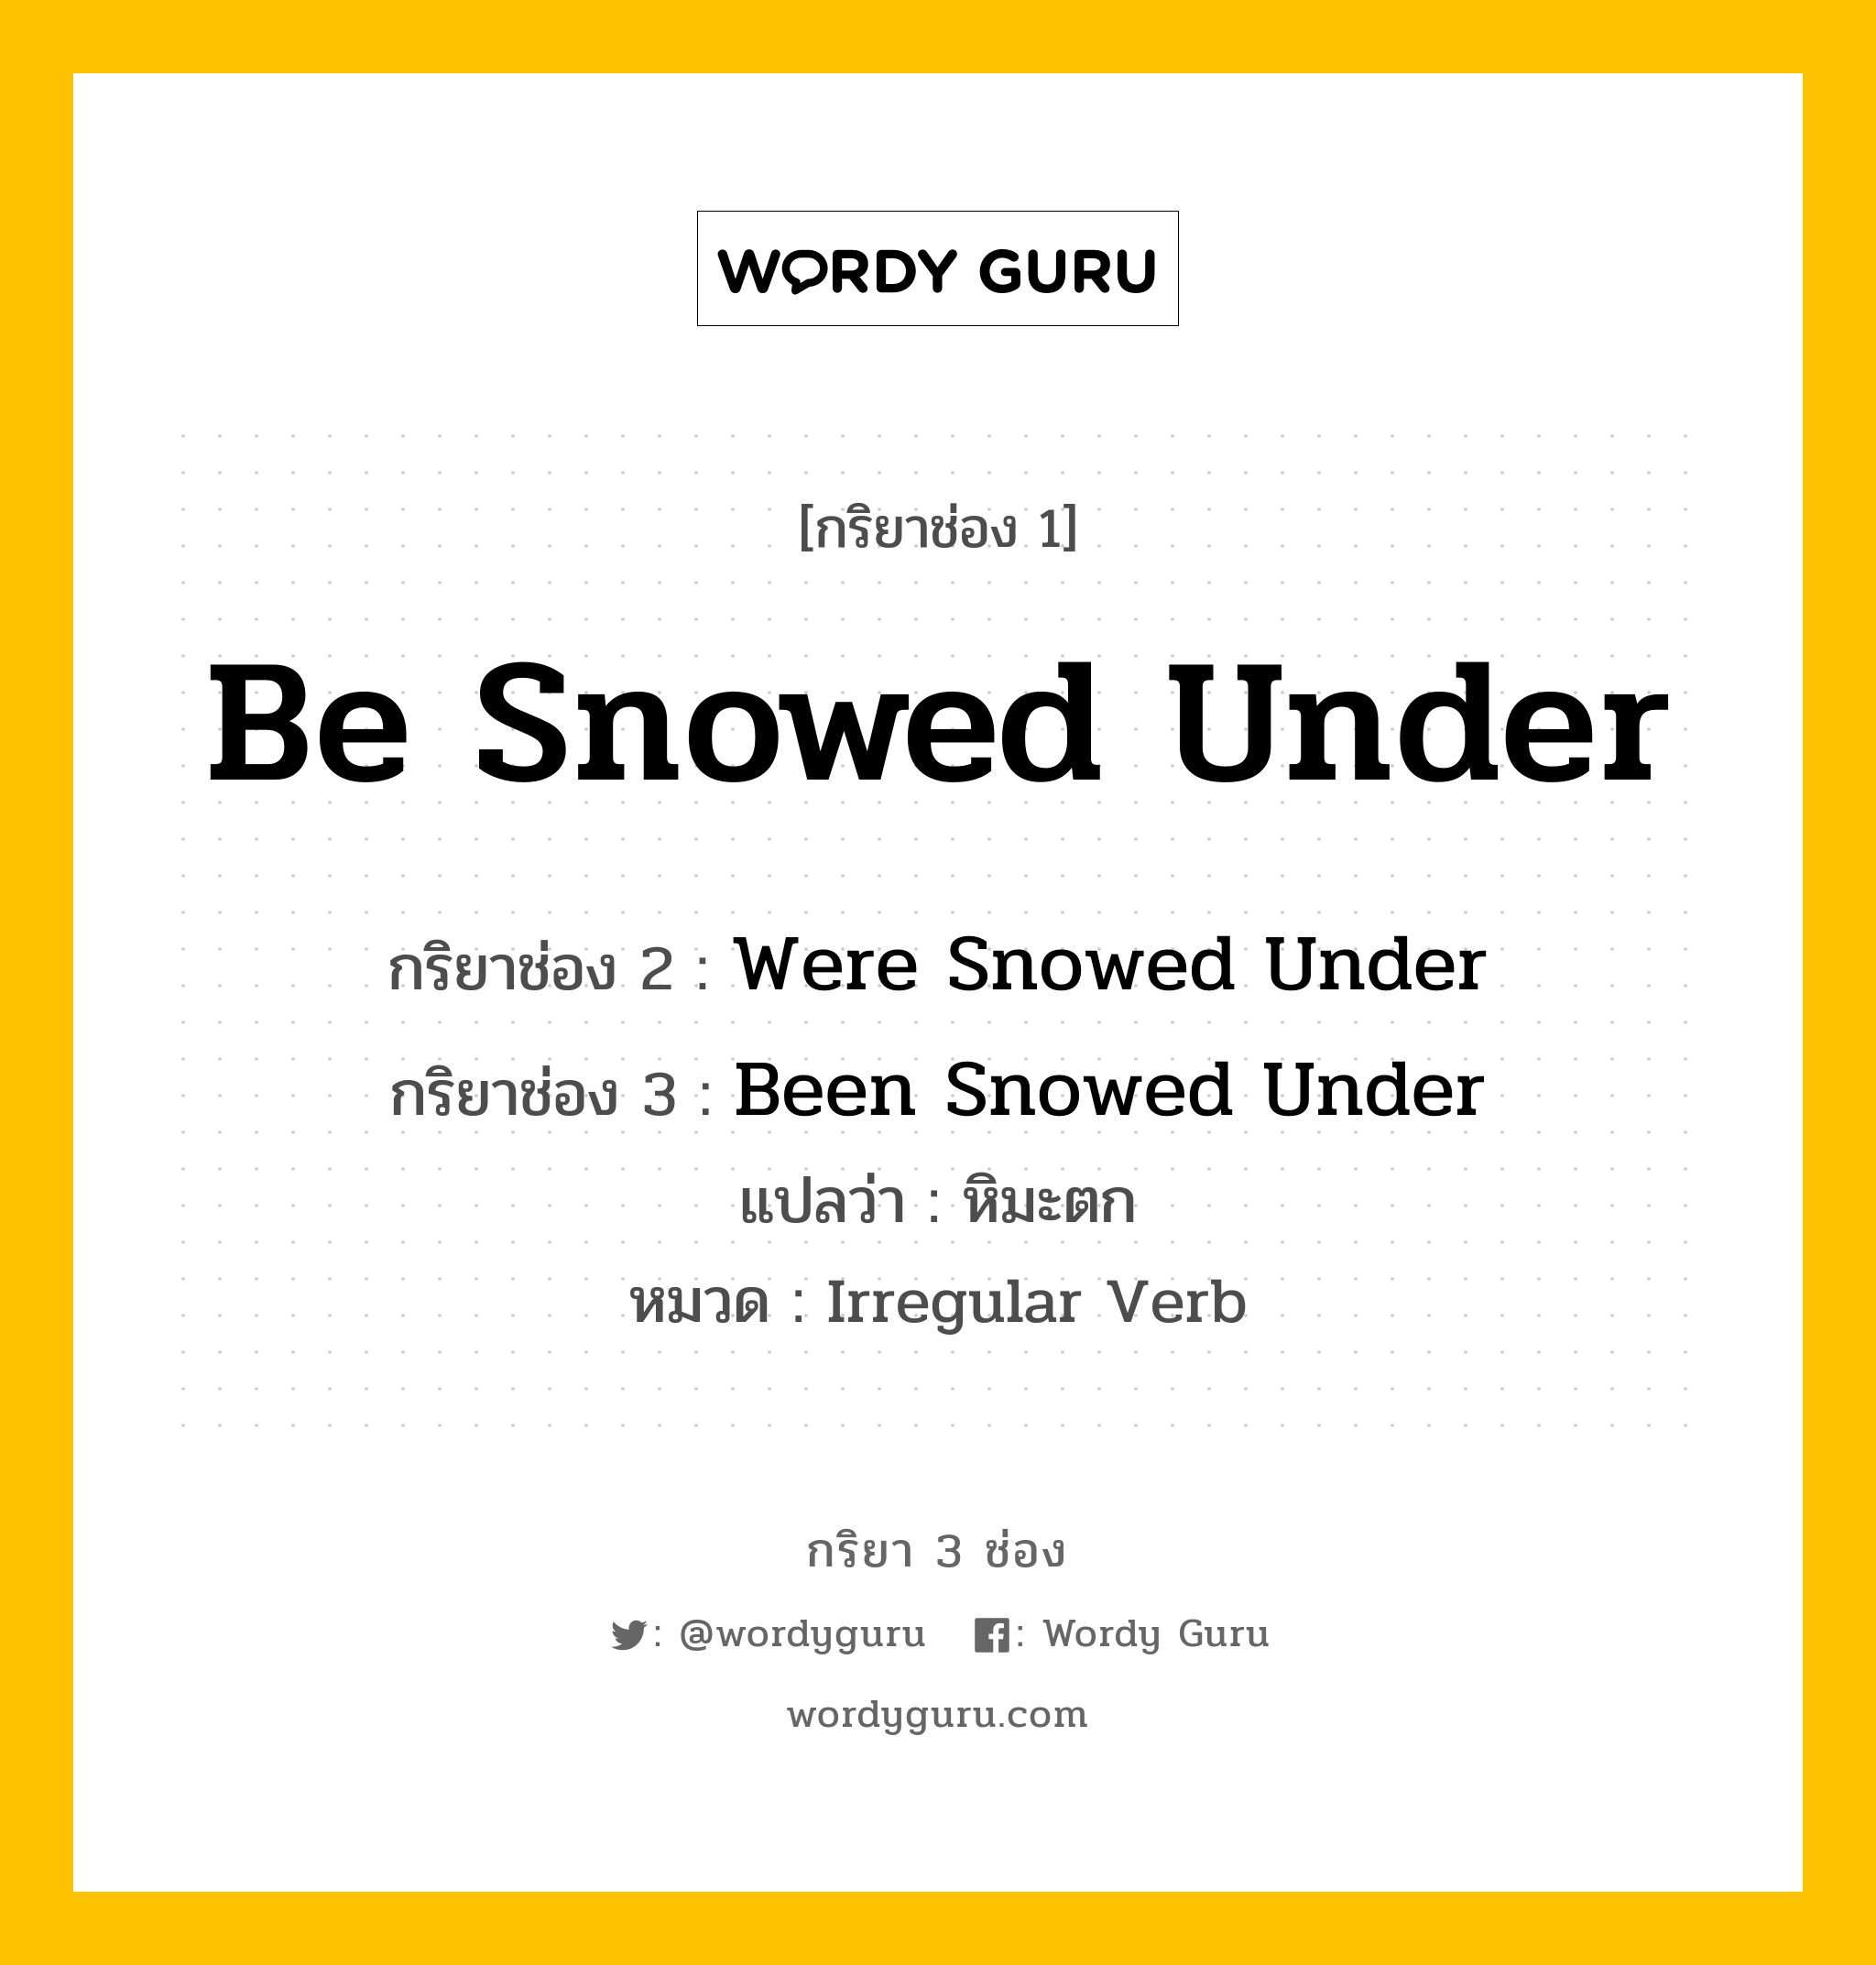 กริยา 3 ช่อง: Be Snowed Under ช่อง 2 Be Snowed Under ช่อง 3 คืออะไร, กริยาช่อง 1 Be Snowed Under กริยาช่อง 2 Were Snowed Under กริยาช่อง 3 Been Snowed Under แปลว่า หิมะตก หมวด Irregular Verb หมวด Irregular Verb